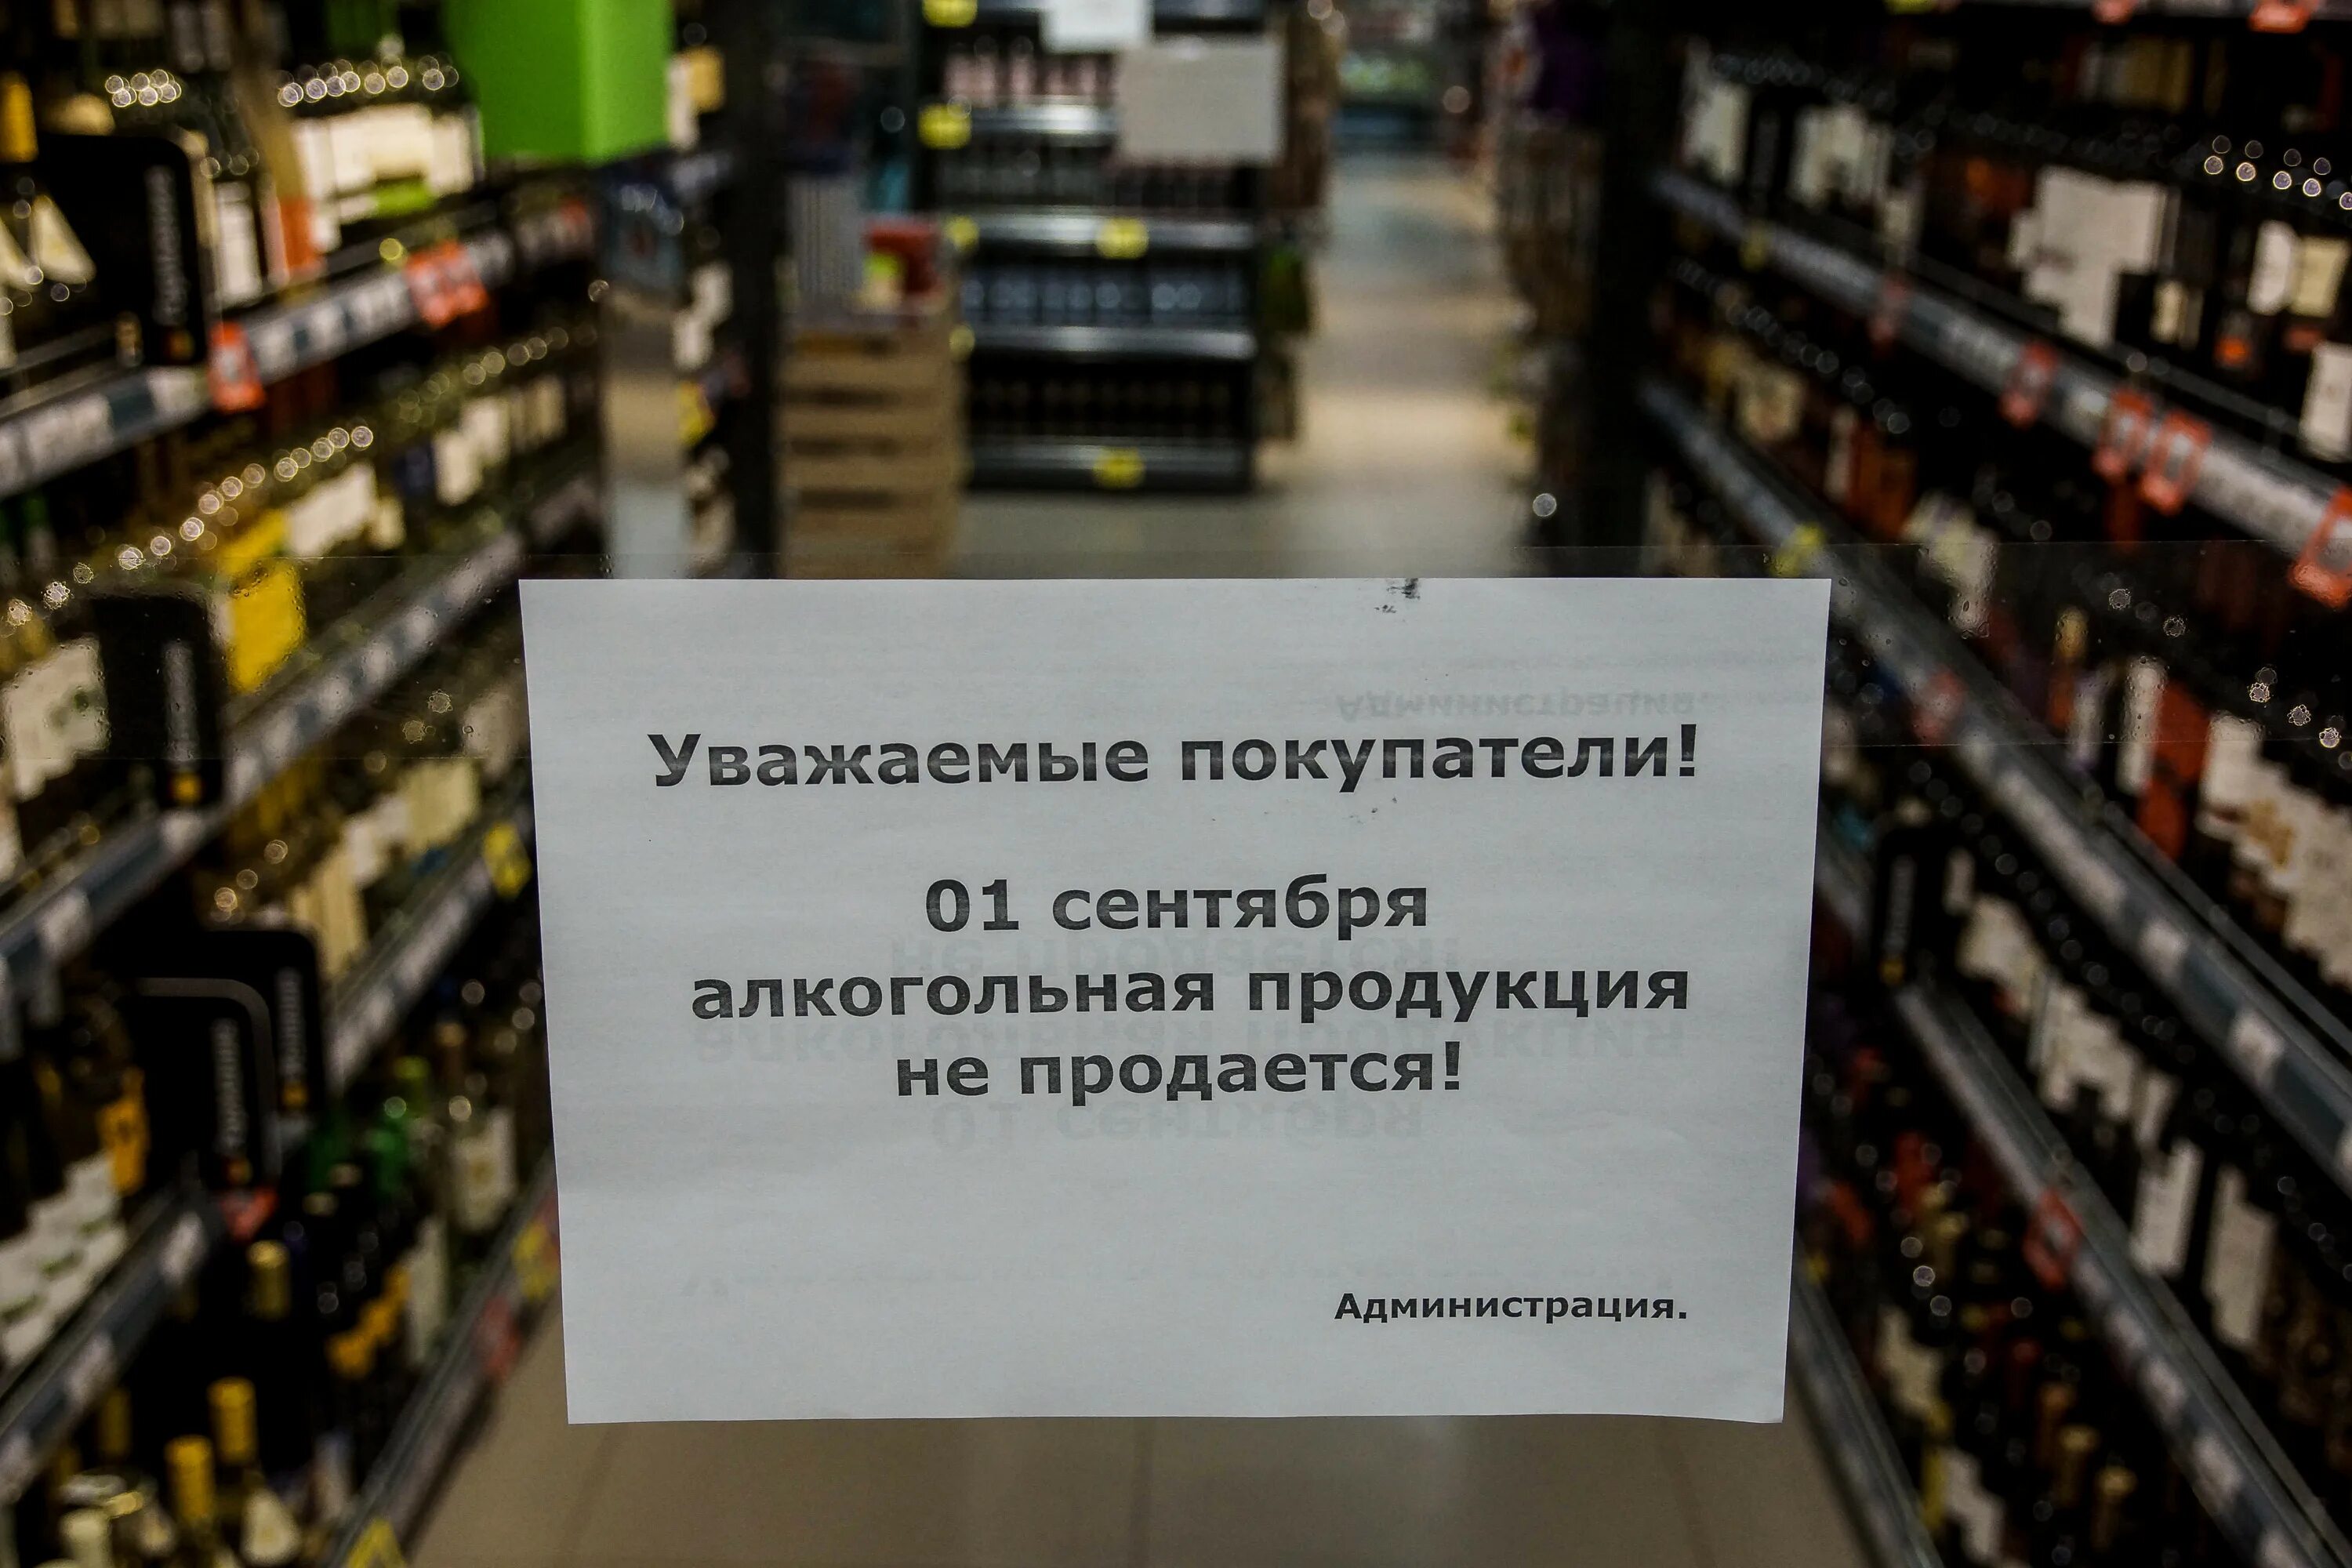 Торговля алкогольной продукцией. Запрет алкогольной продукции. Алкогольная продукция не продается. Тут будет продаваться